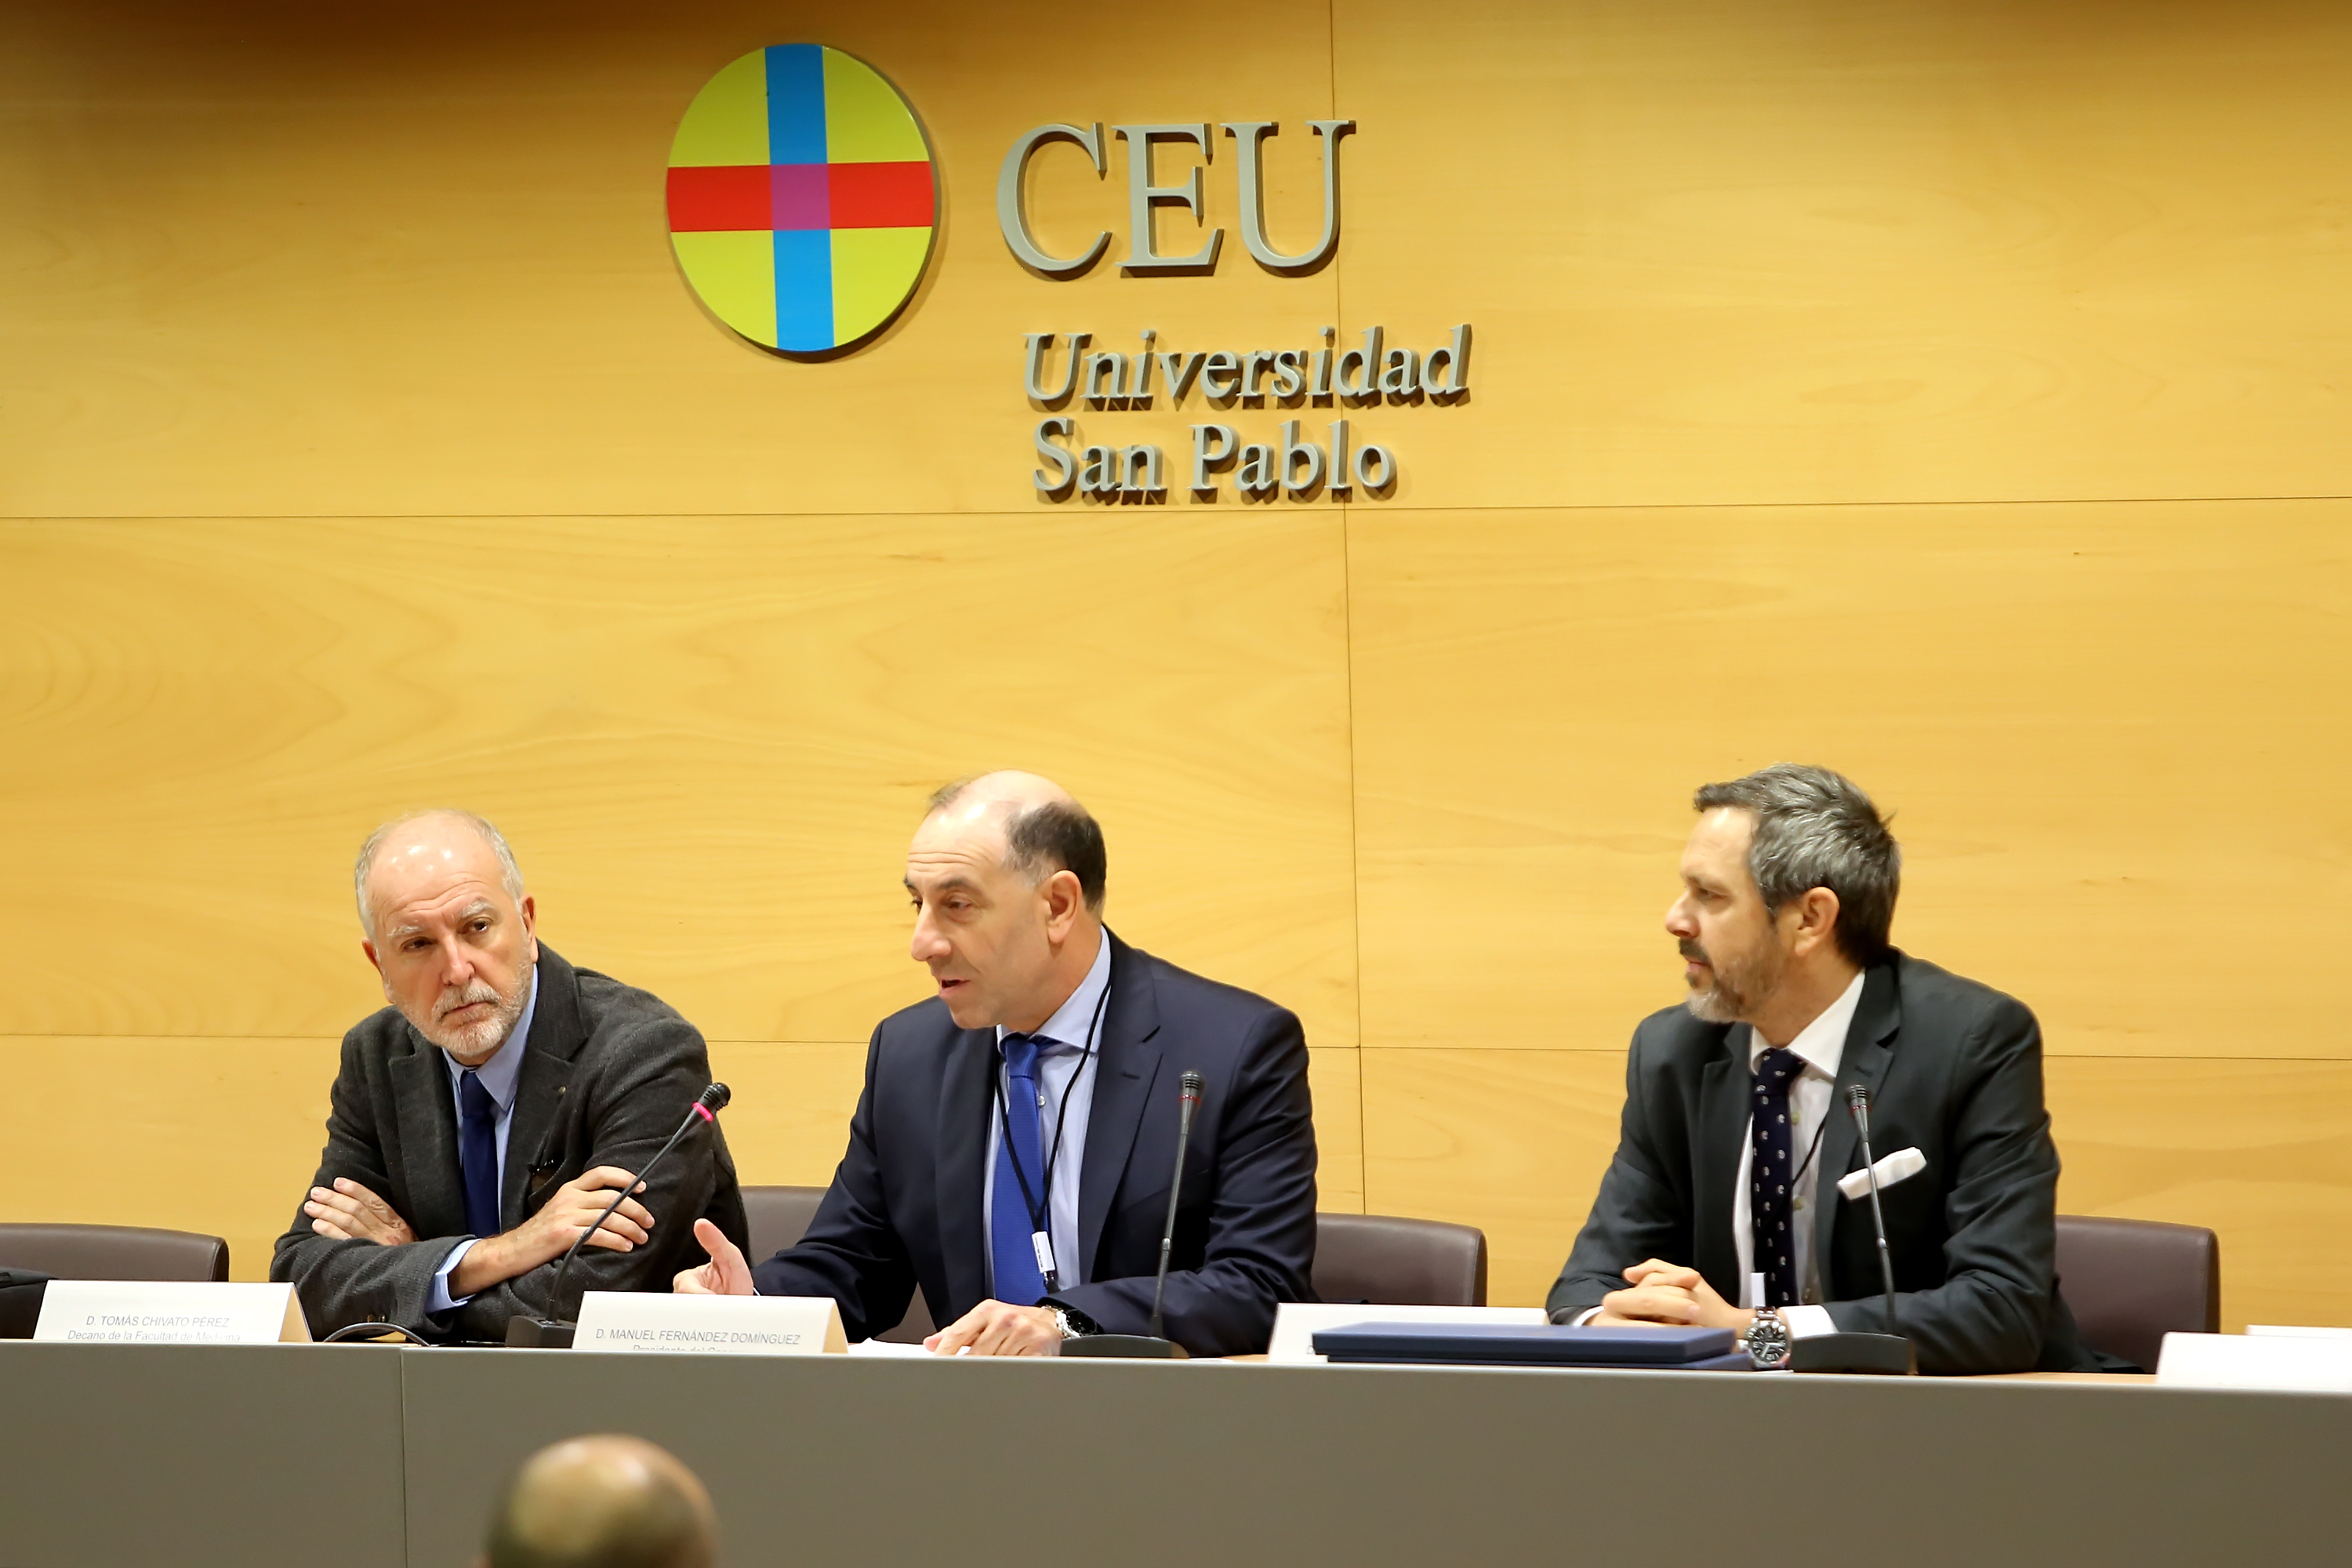 El Primer Simposium CEU-ICOI ha estado co-dirigido por los profesores Manuel Fernández Domínguez y Antonio Fernández-Coppell García. FOTO: CEU-ICOI